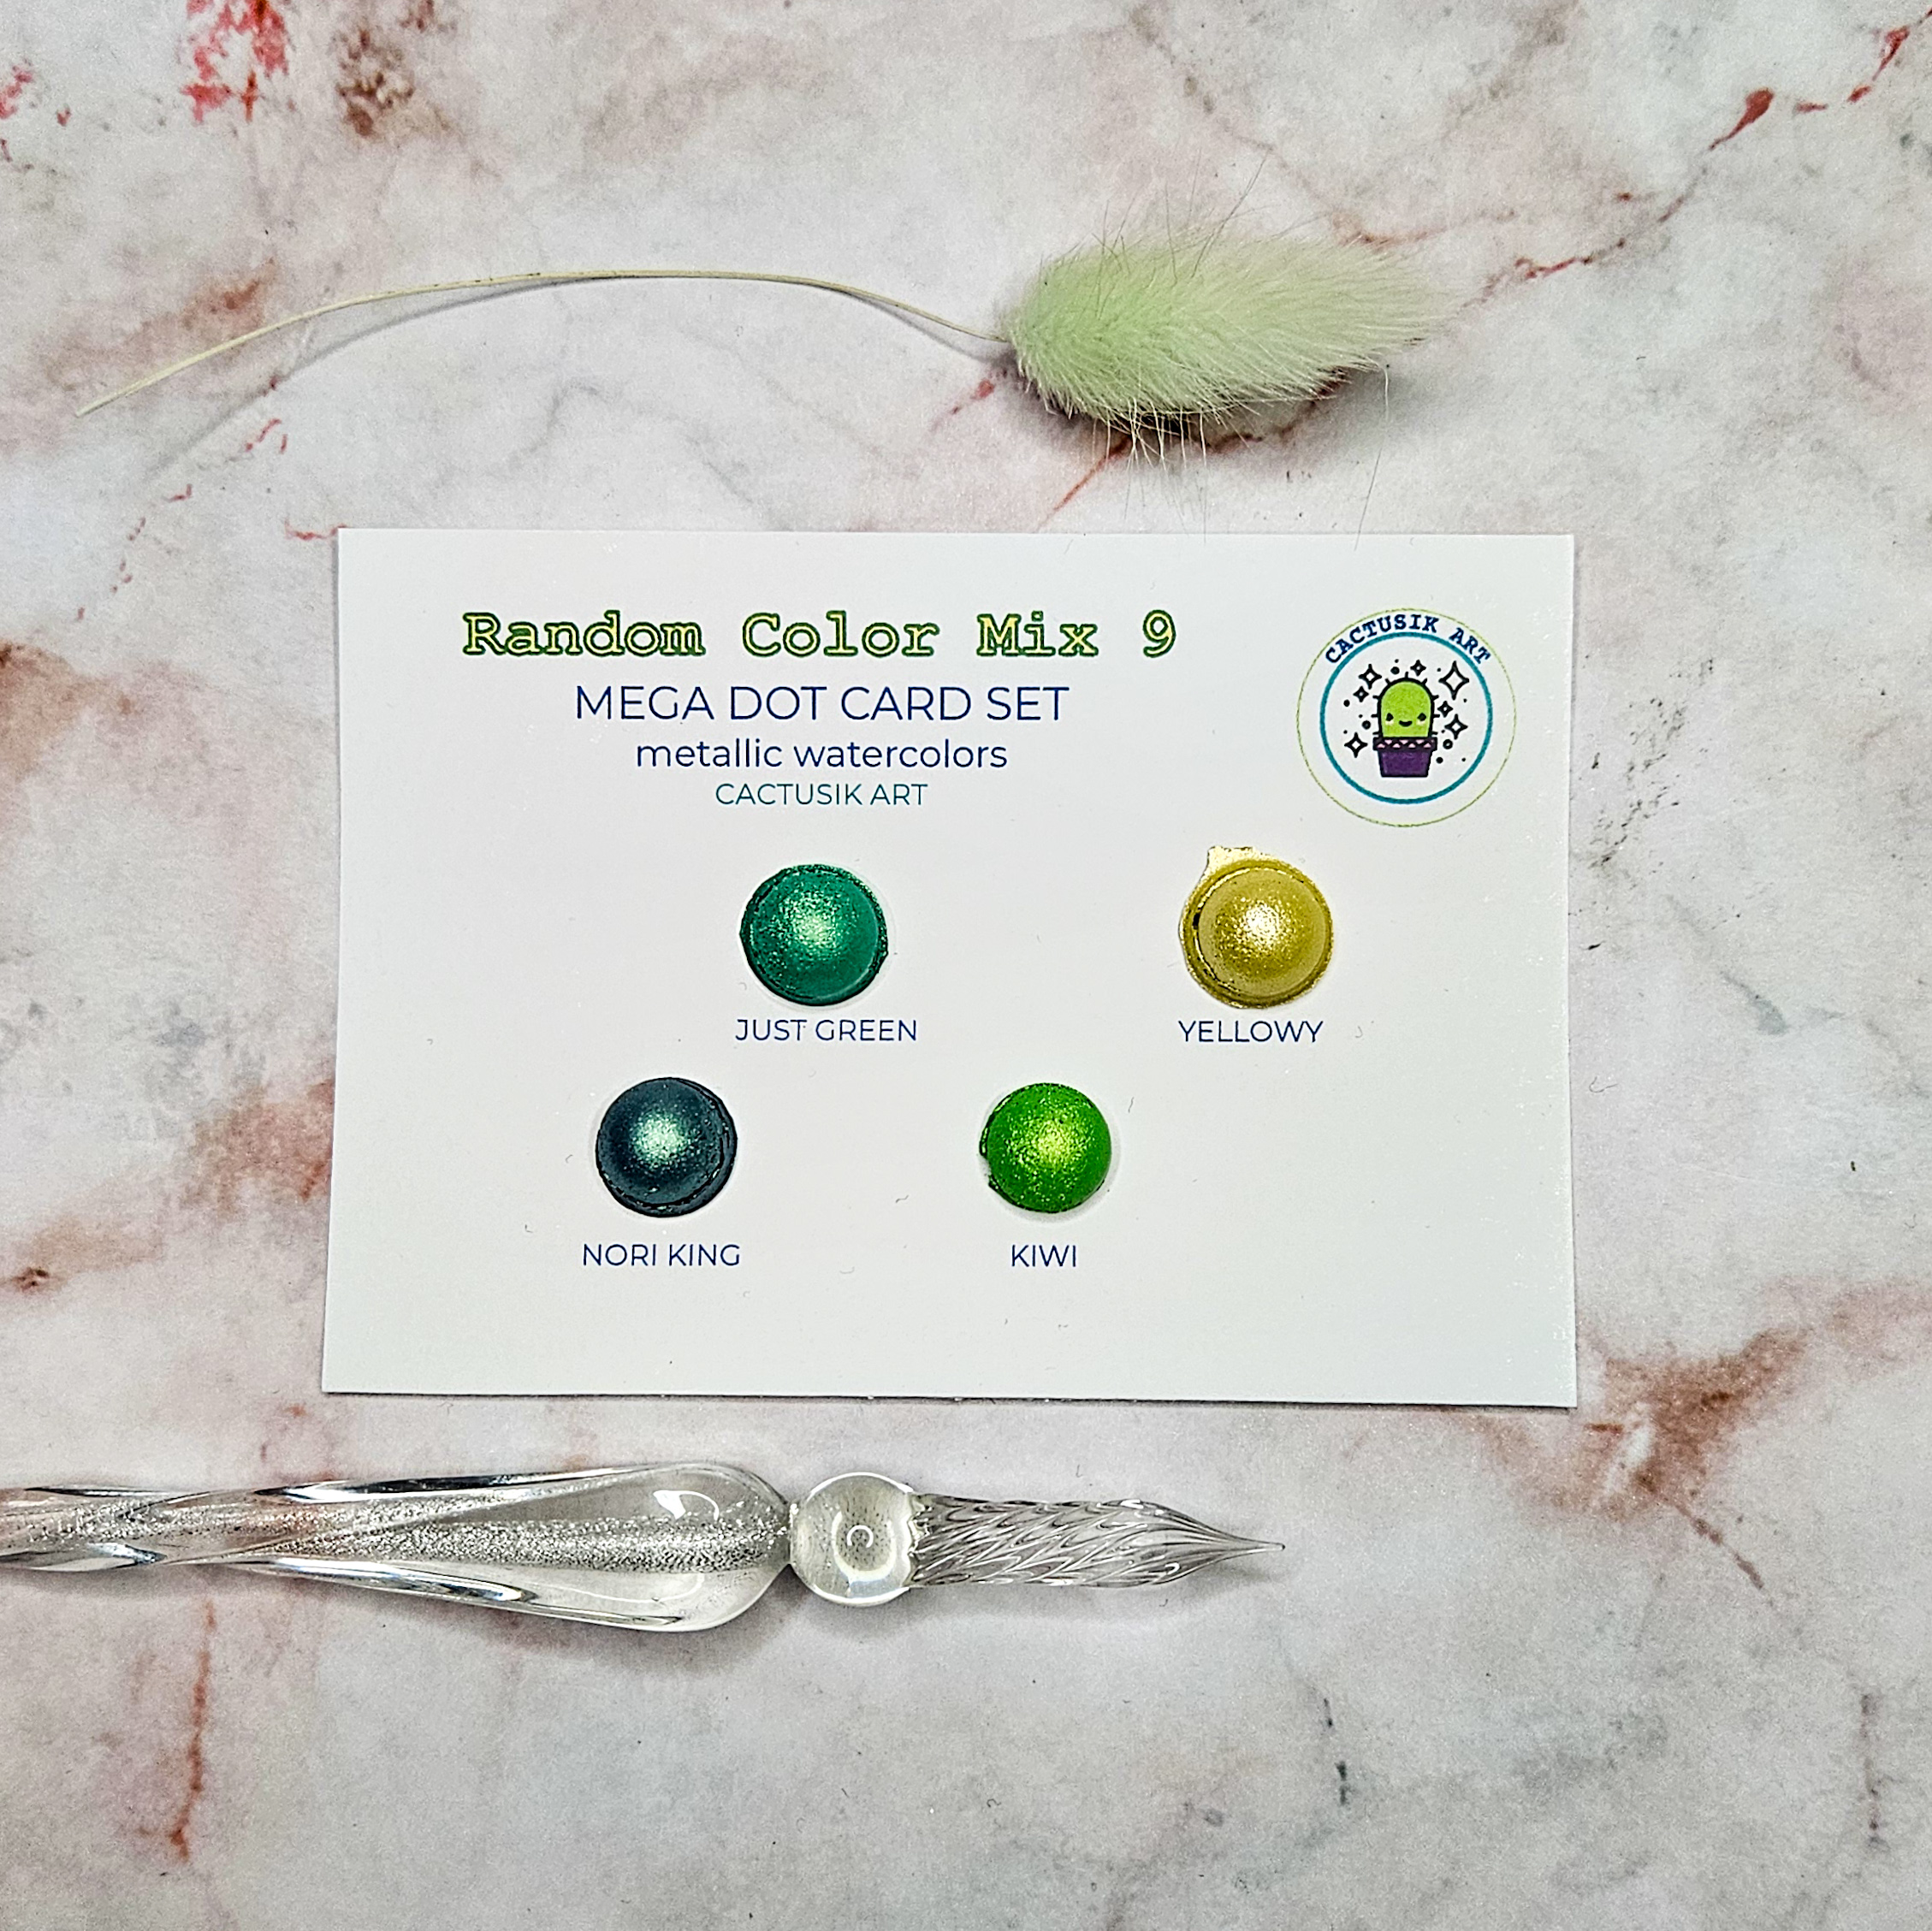 Random Color Mix 9 – Mega Dot Card Set